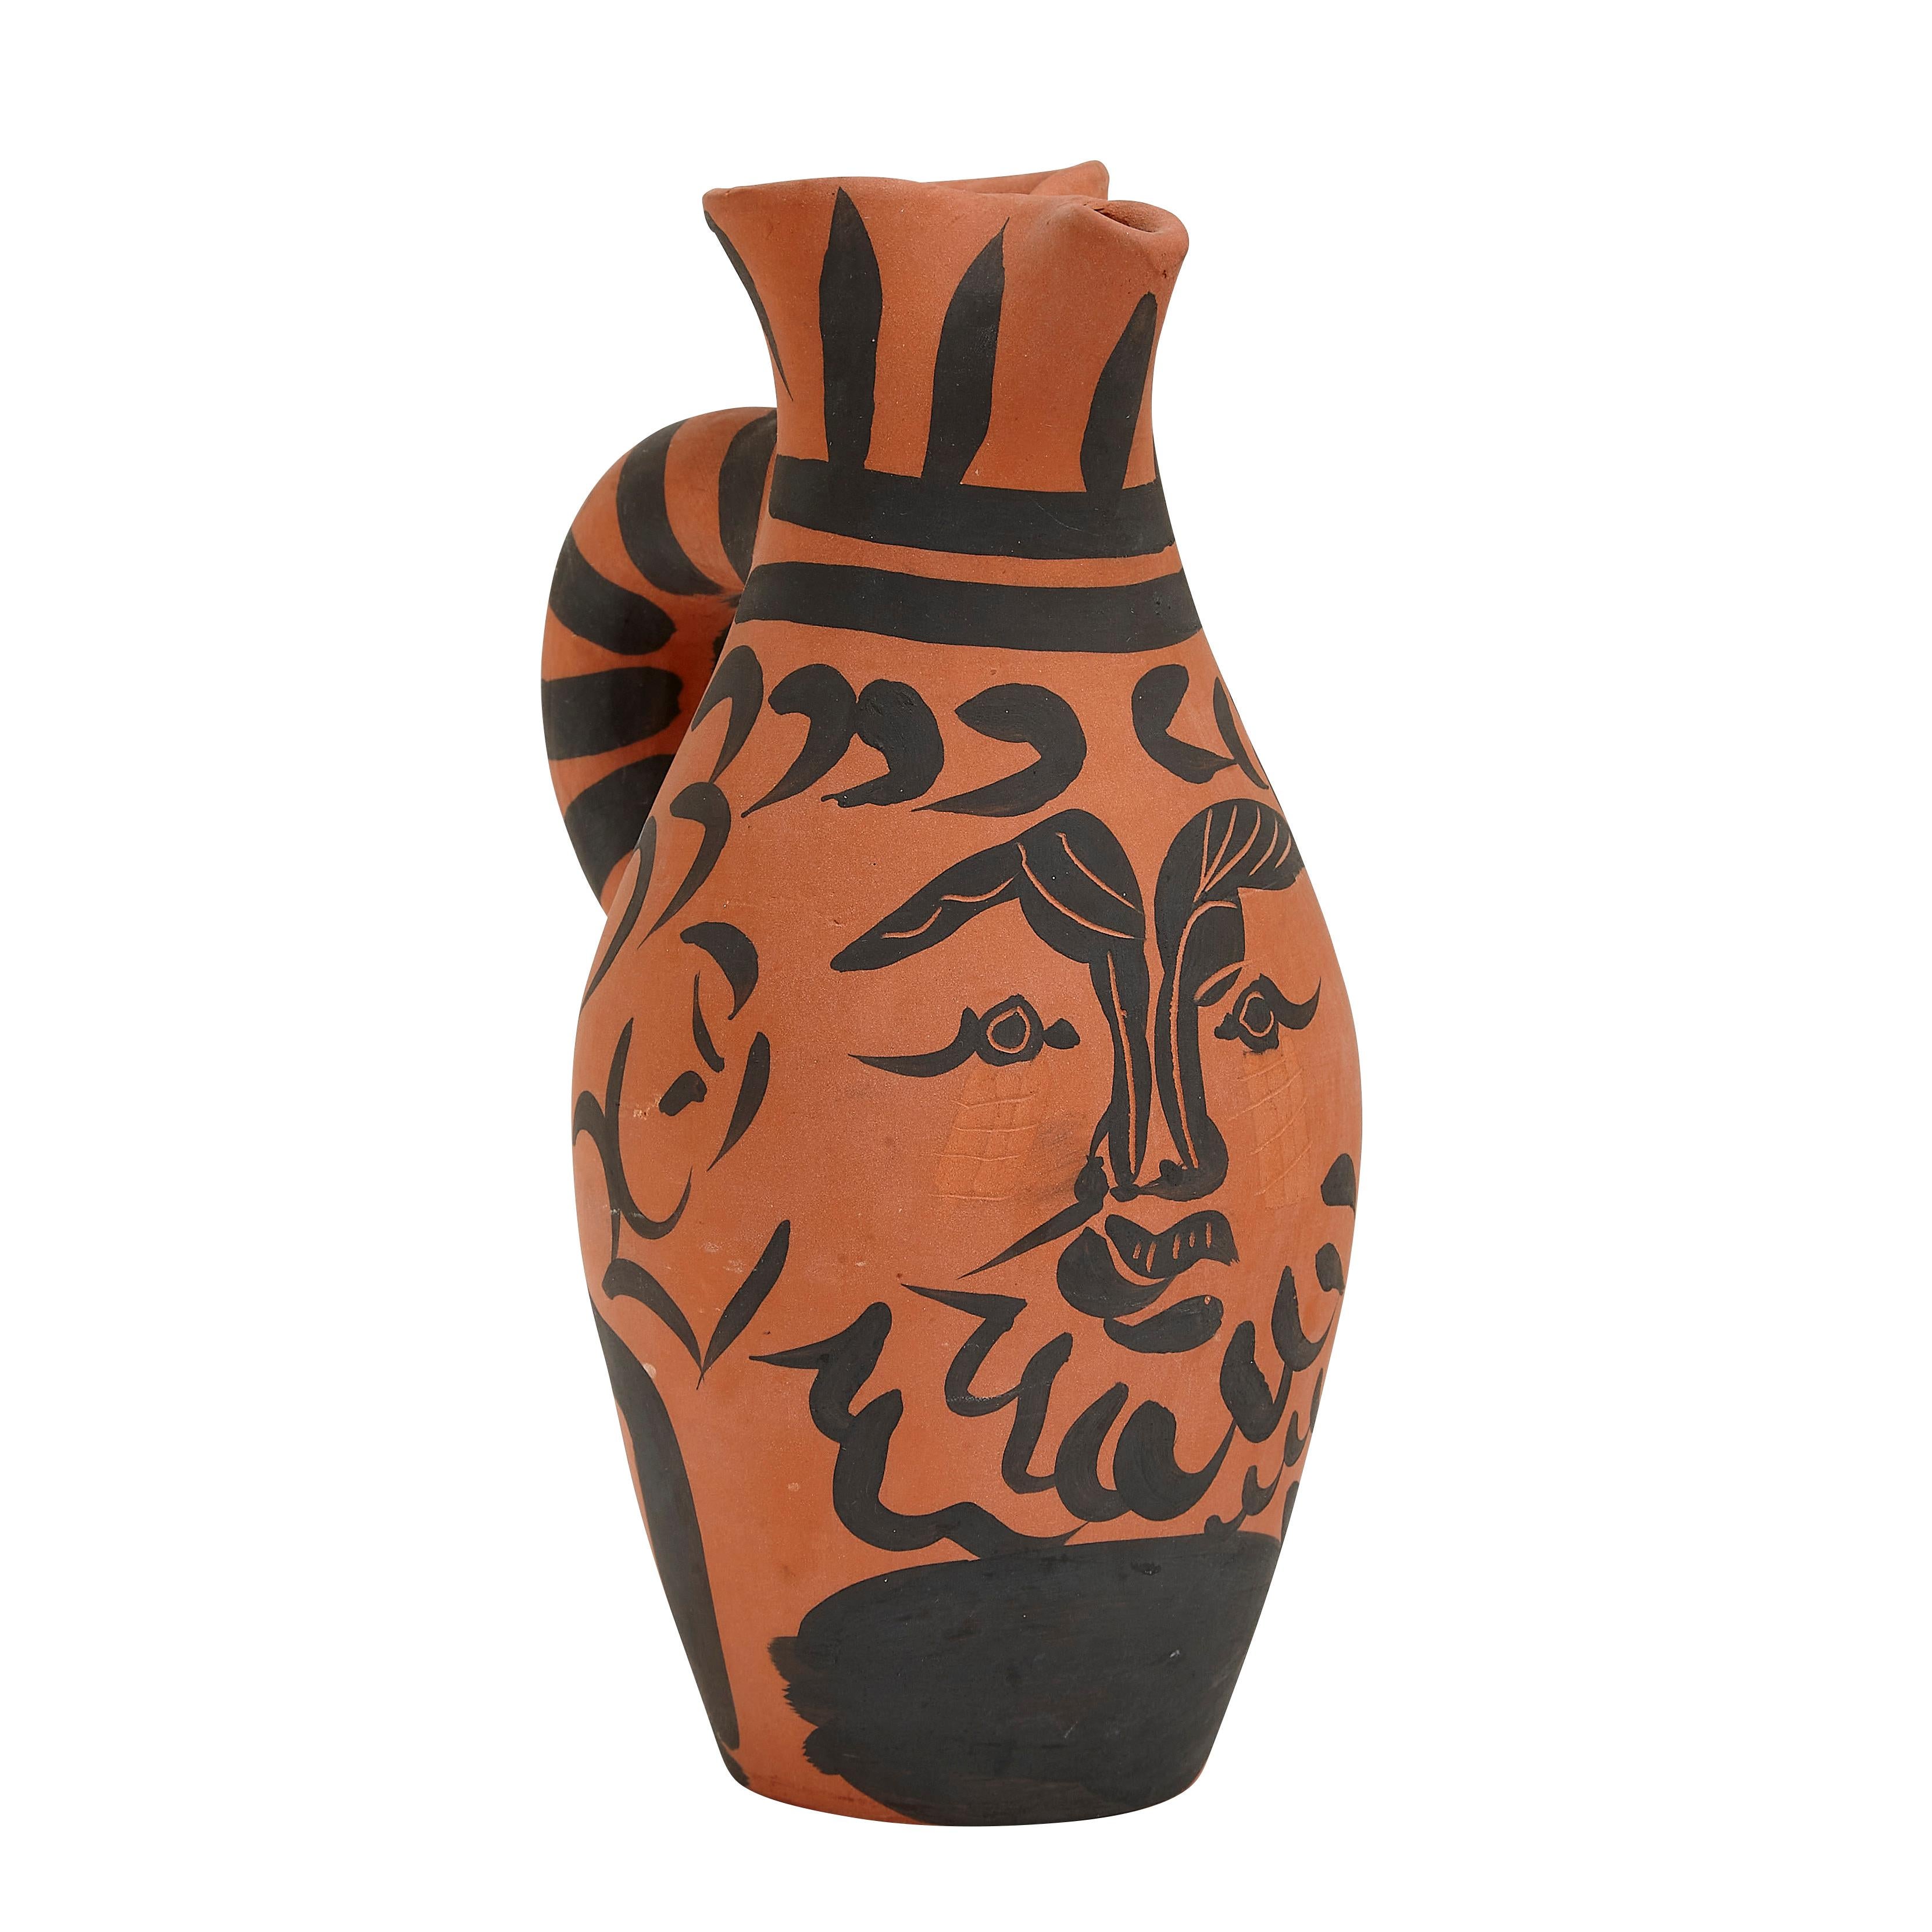 Pablo Picasso Madoura Ceramic Pitcher - Yan Barbu, Ramié 513